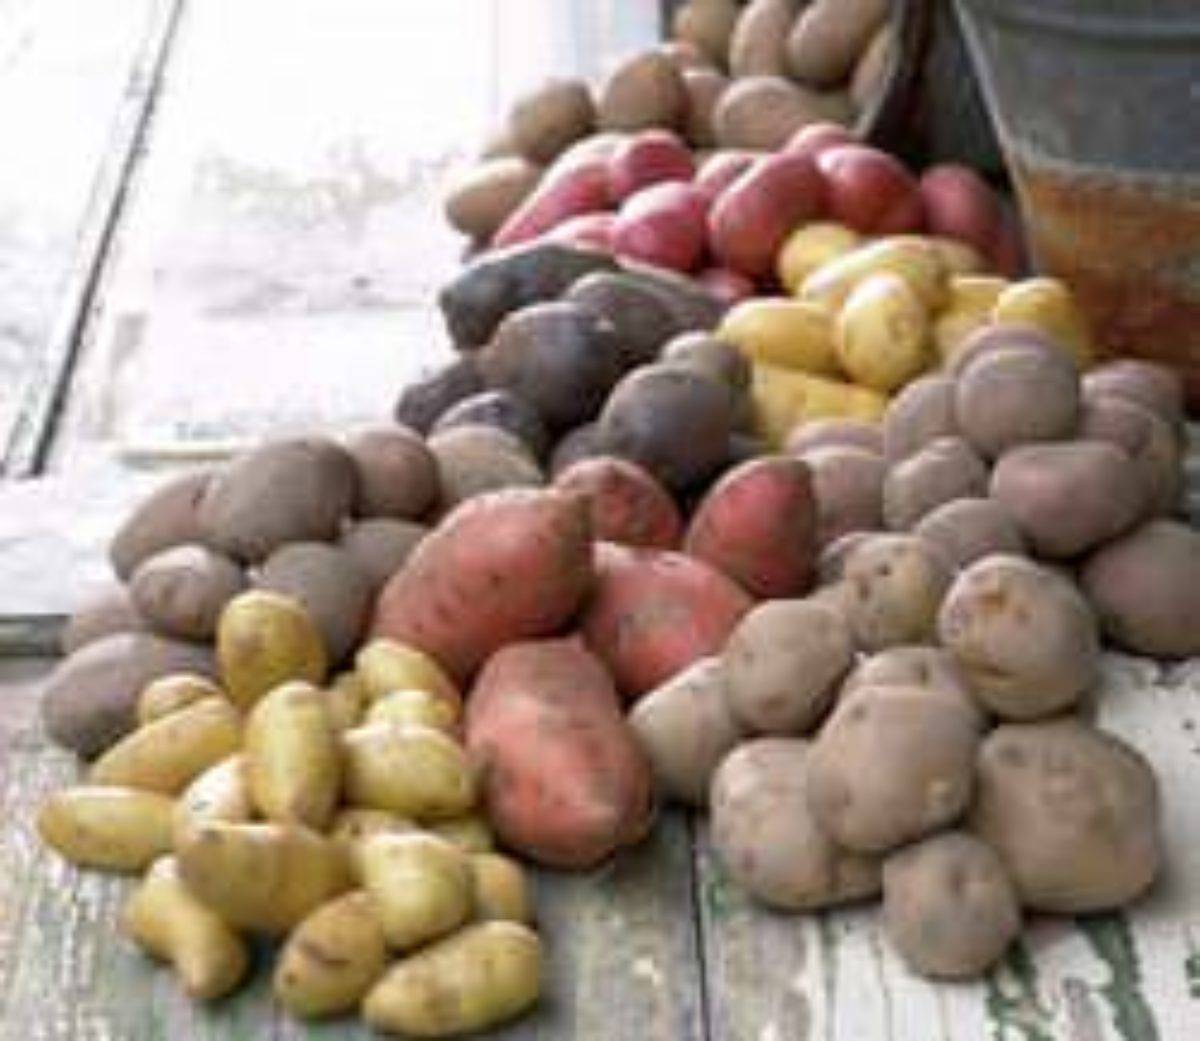 Лучшие сорта раннего картофеля: ультраранние, скороспелые и среднеранние